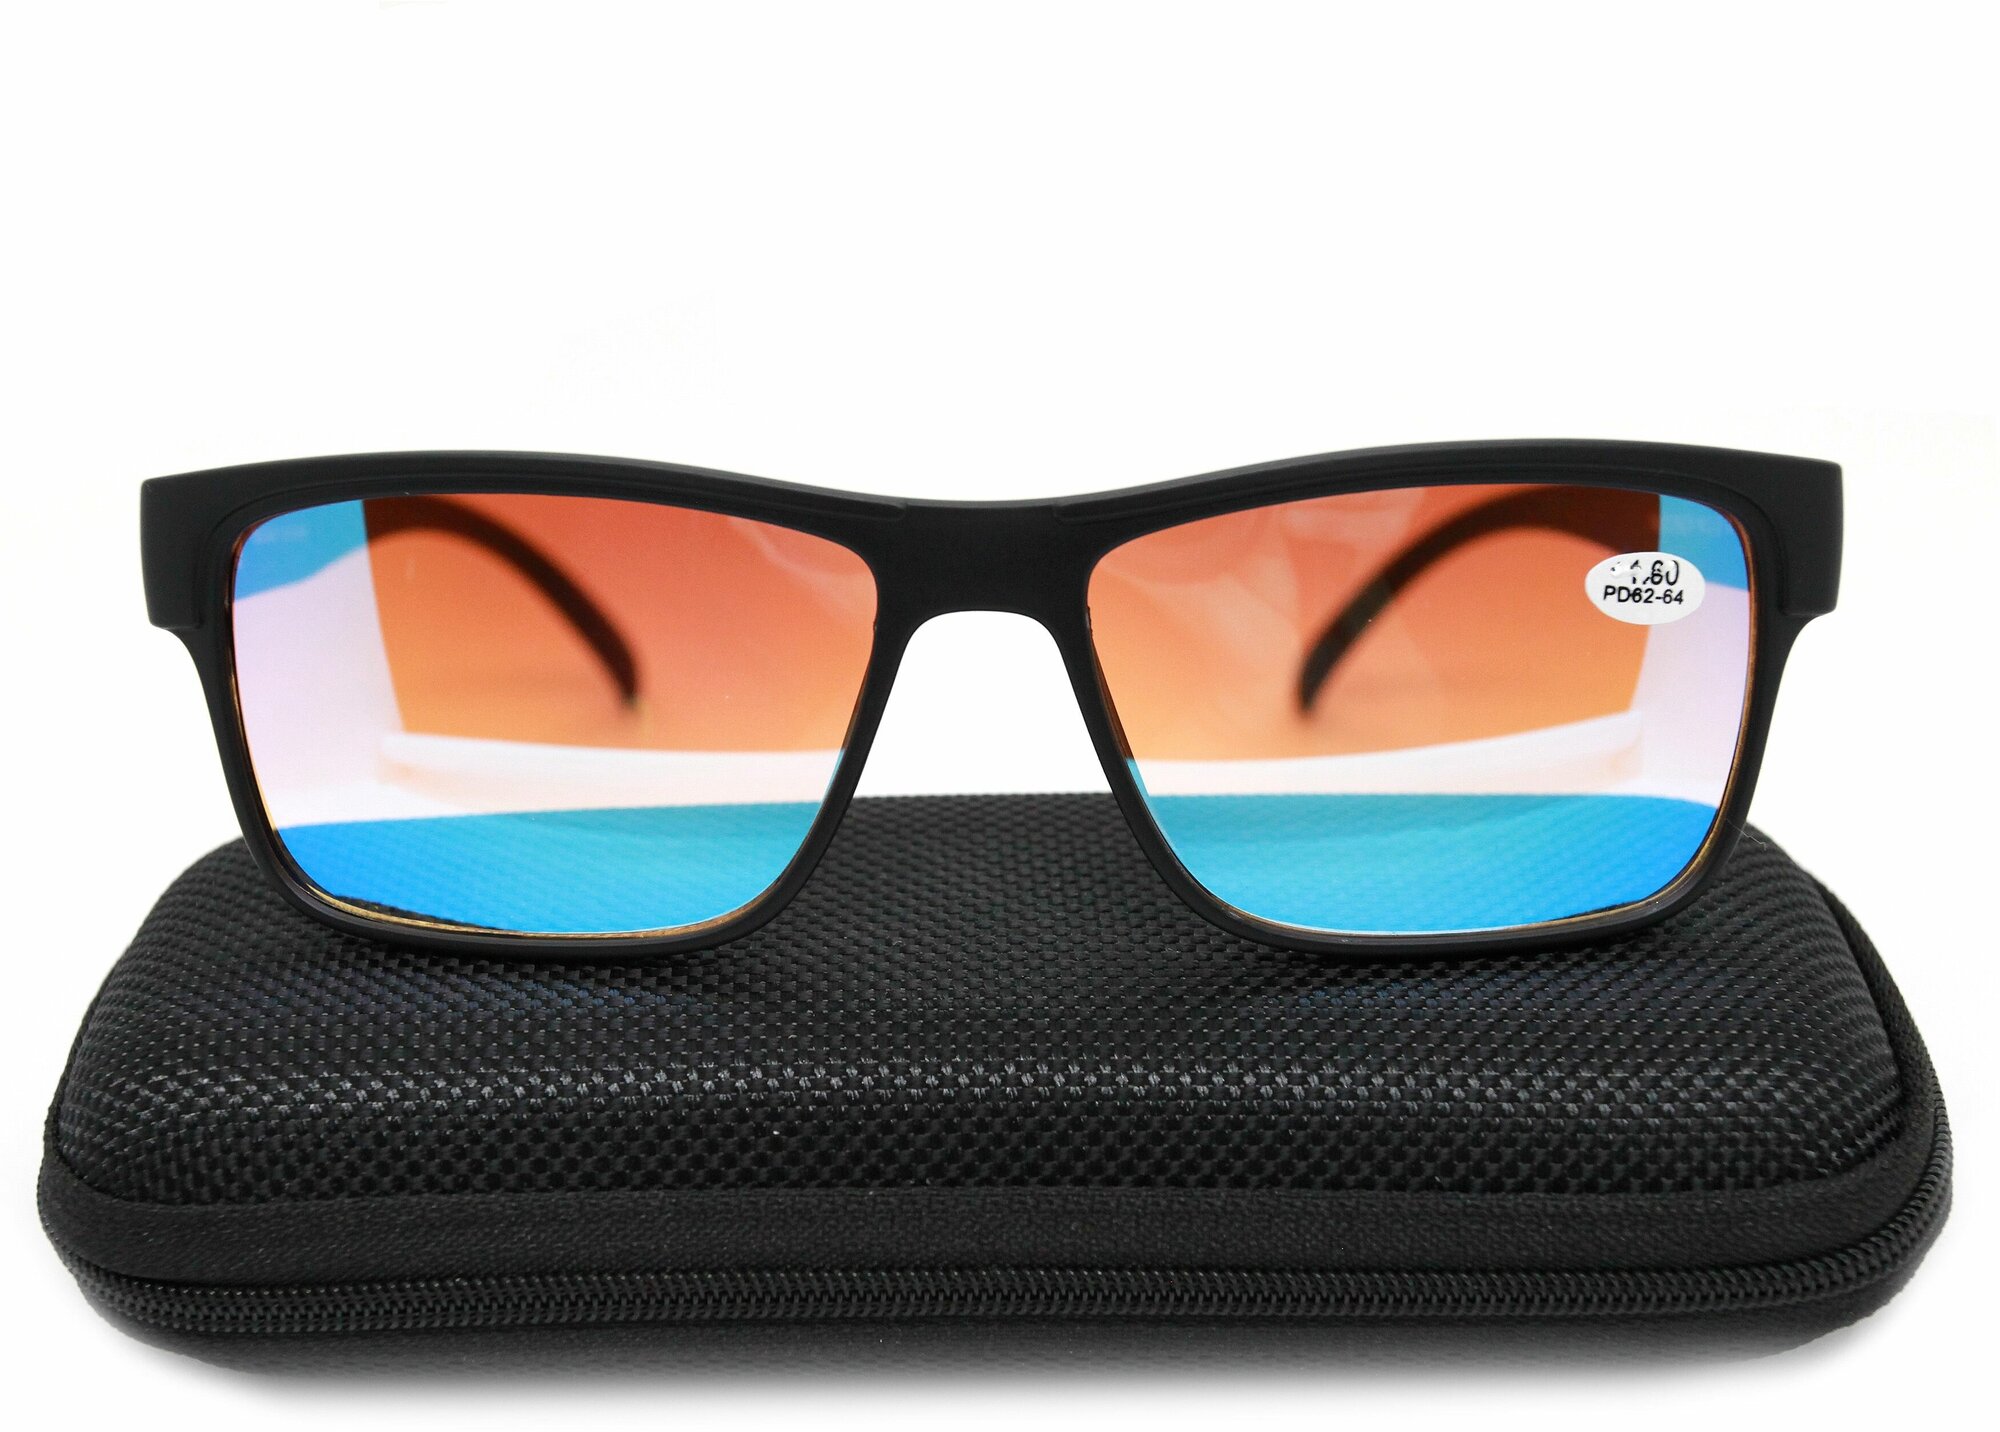 Готовые очки для зрения-чтения с диоптриями (+1.00) корригирующие, зеркальные тонированные Fabia Monti 0213, с футляром, PD62-64